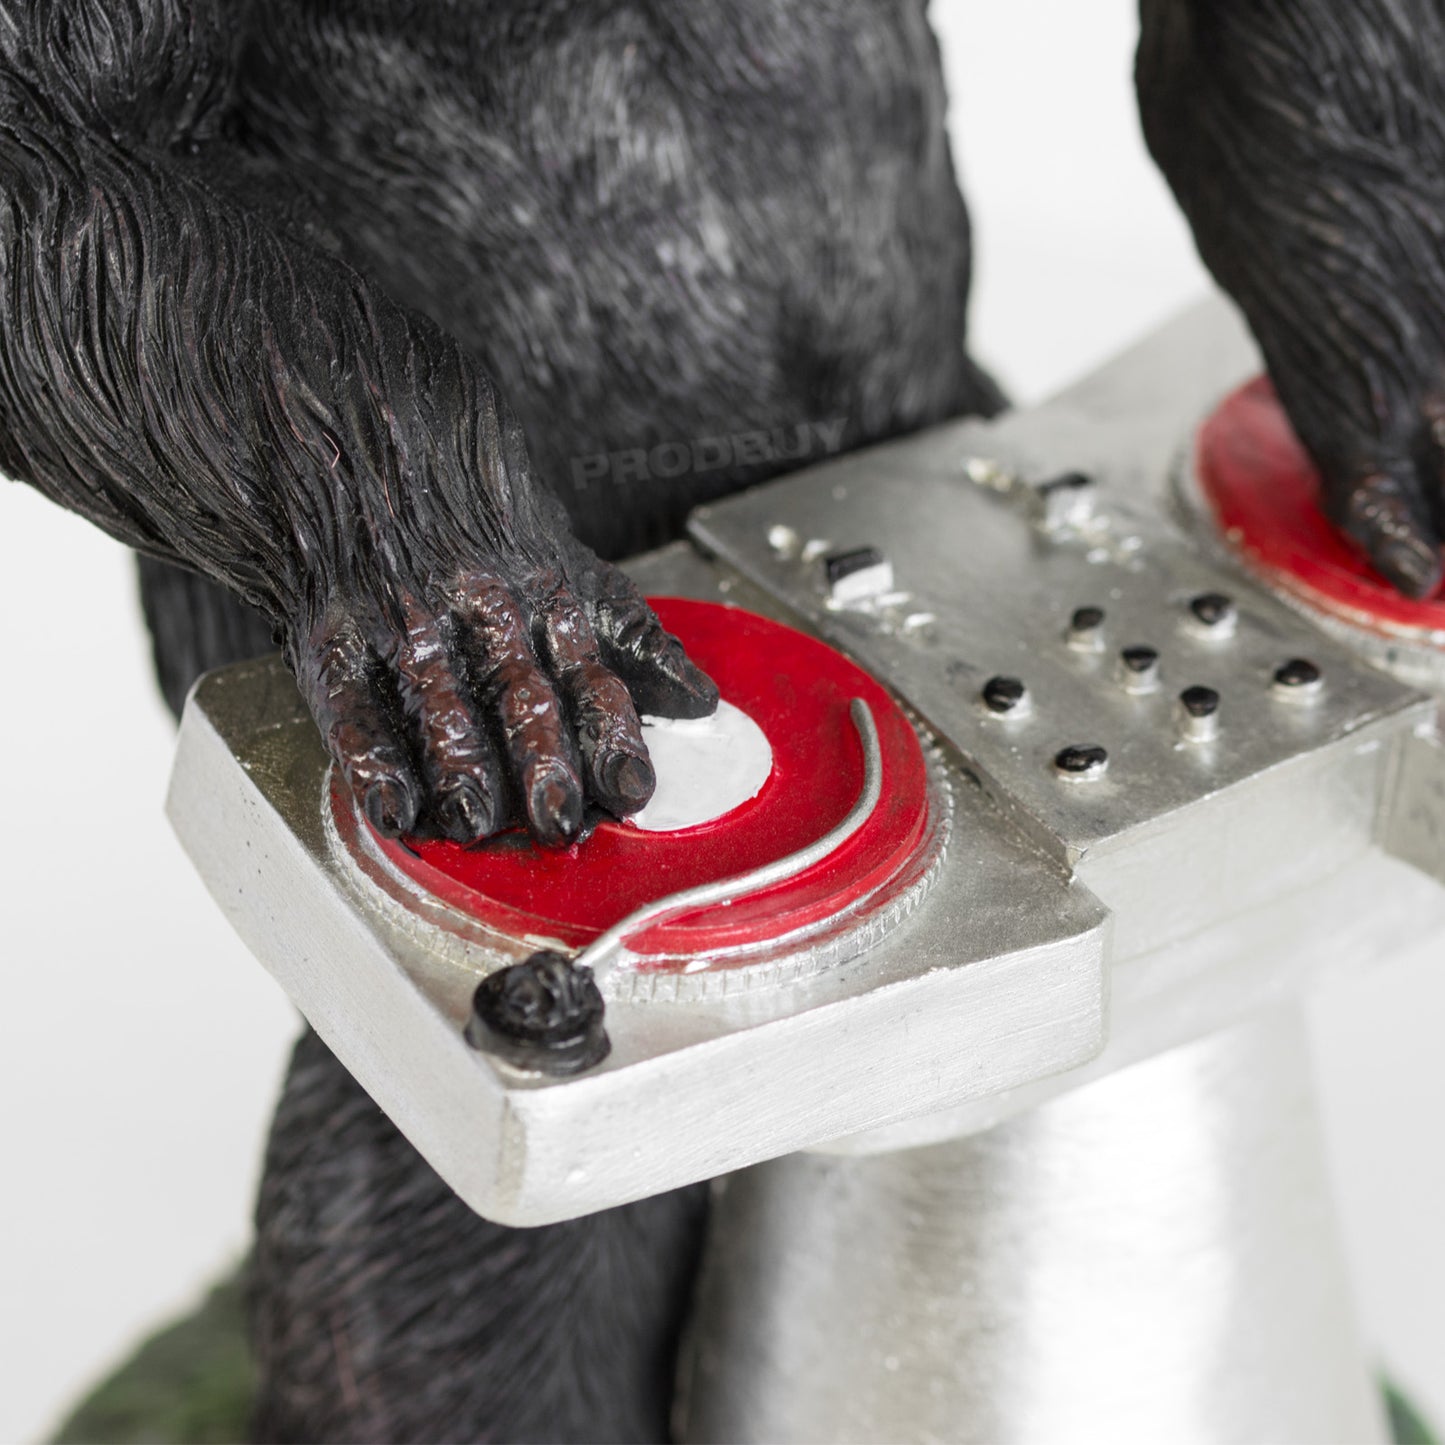 DJ Pete Kong Resin Gorilla with Decks Garden Ornament